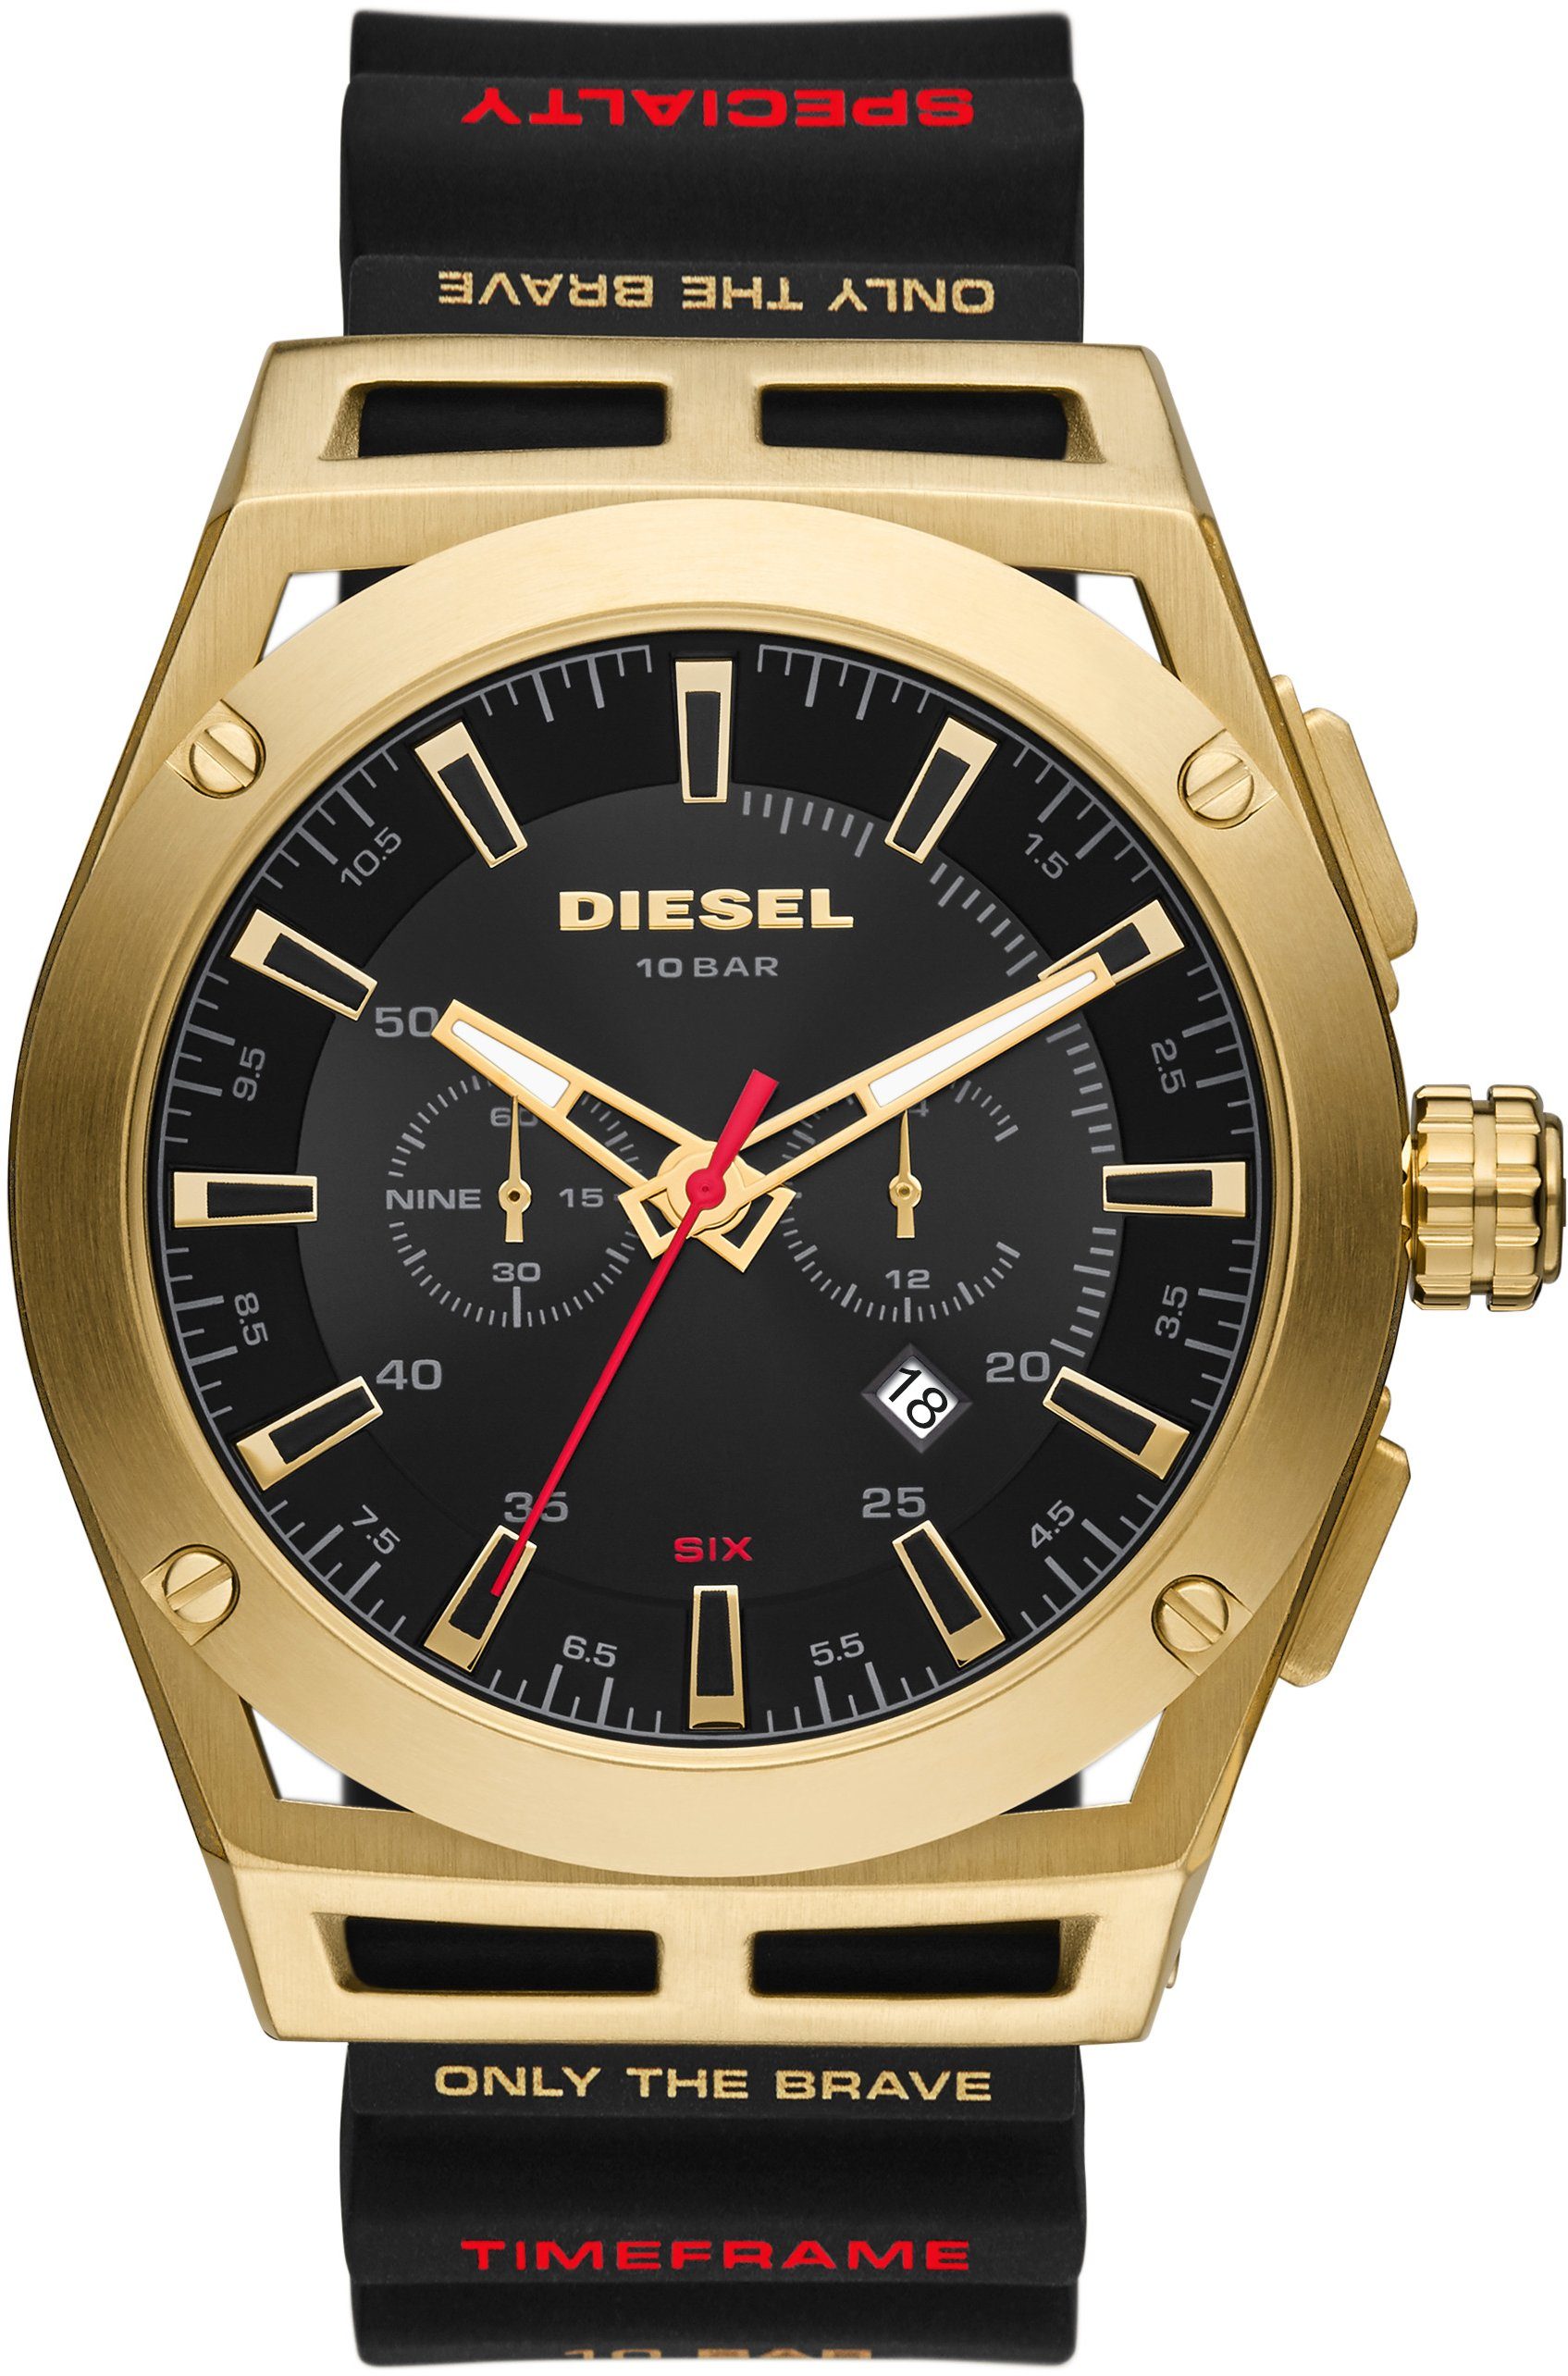 Diesel Chronograph TIMEFRAME, DZ4546, Quarzuhr, Armbanduhr, Herrenuhr, Datum, Stoppfunktion